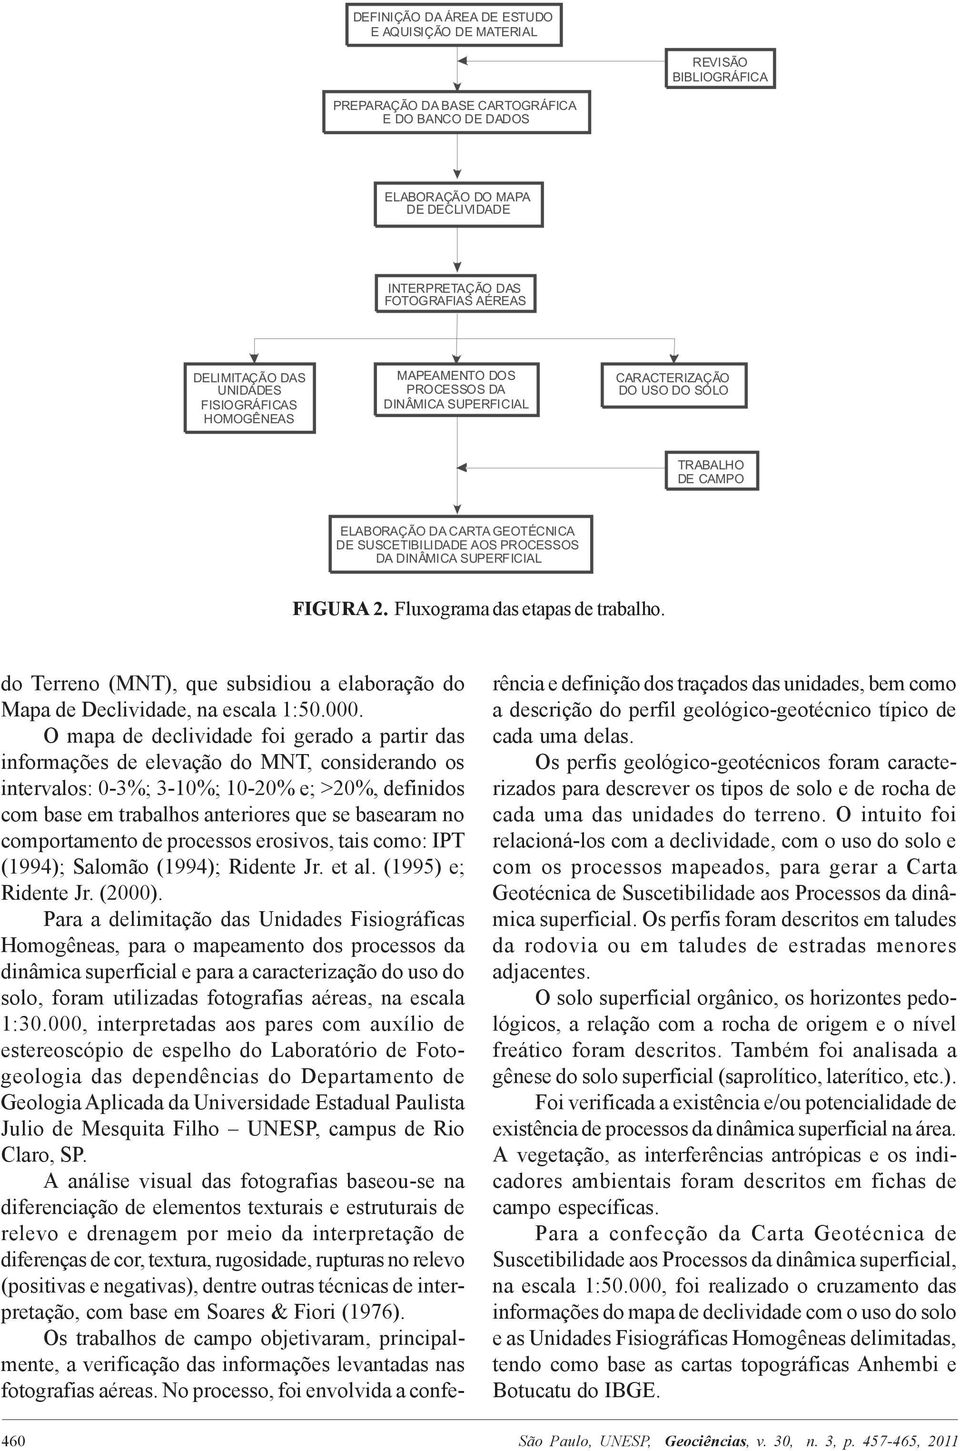 comportamento de processos erosivos, tais como: IPT (1994); Salomão (1994); Ridente Jr. et al. (1995) e; Ridente Jr. (2000).